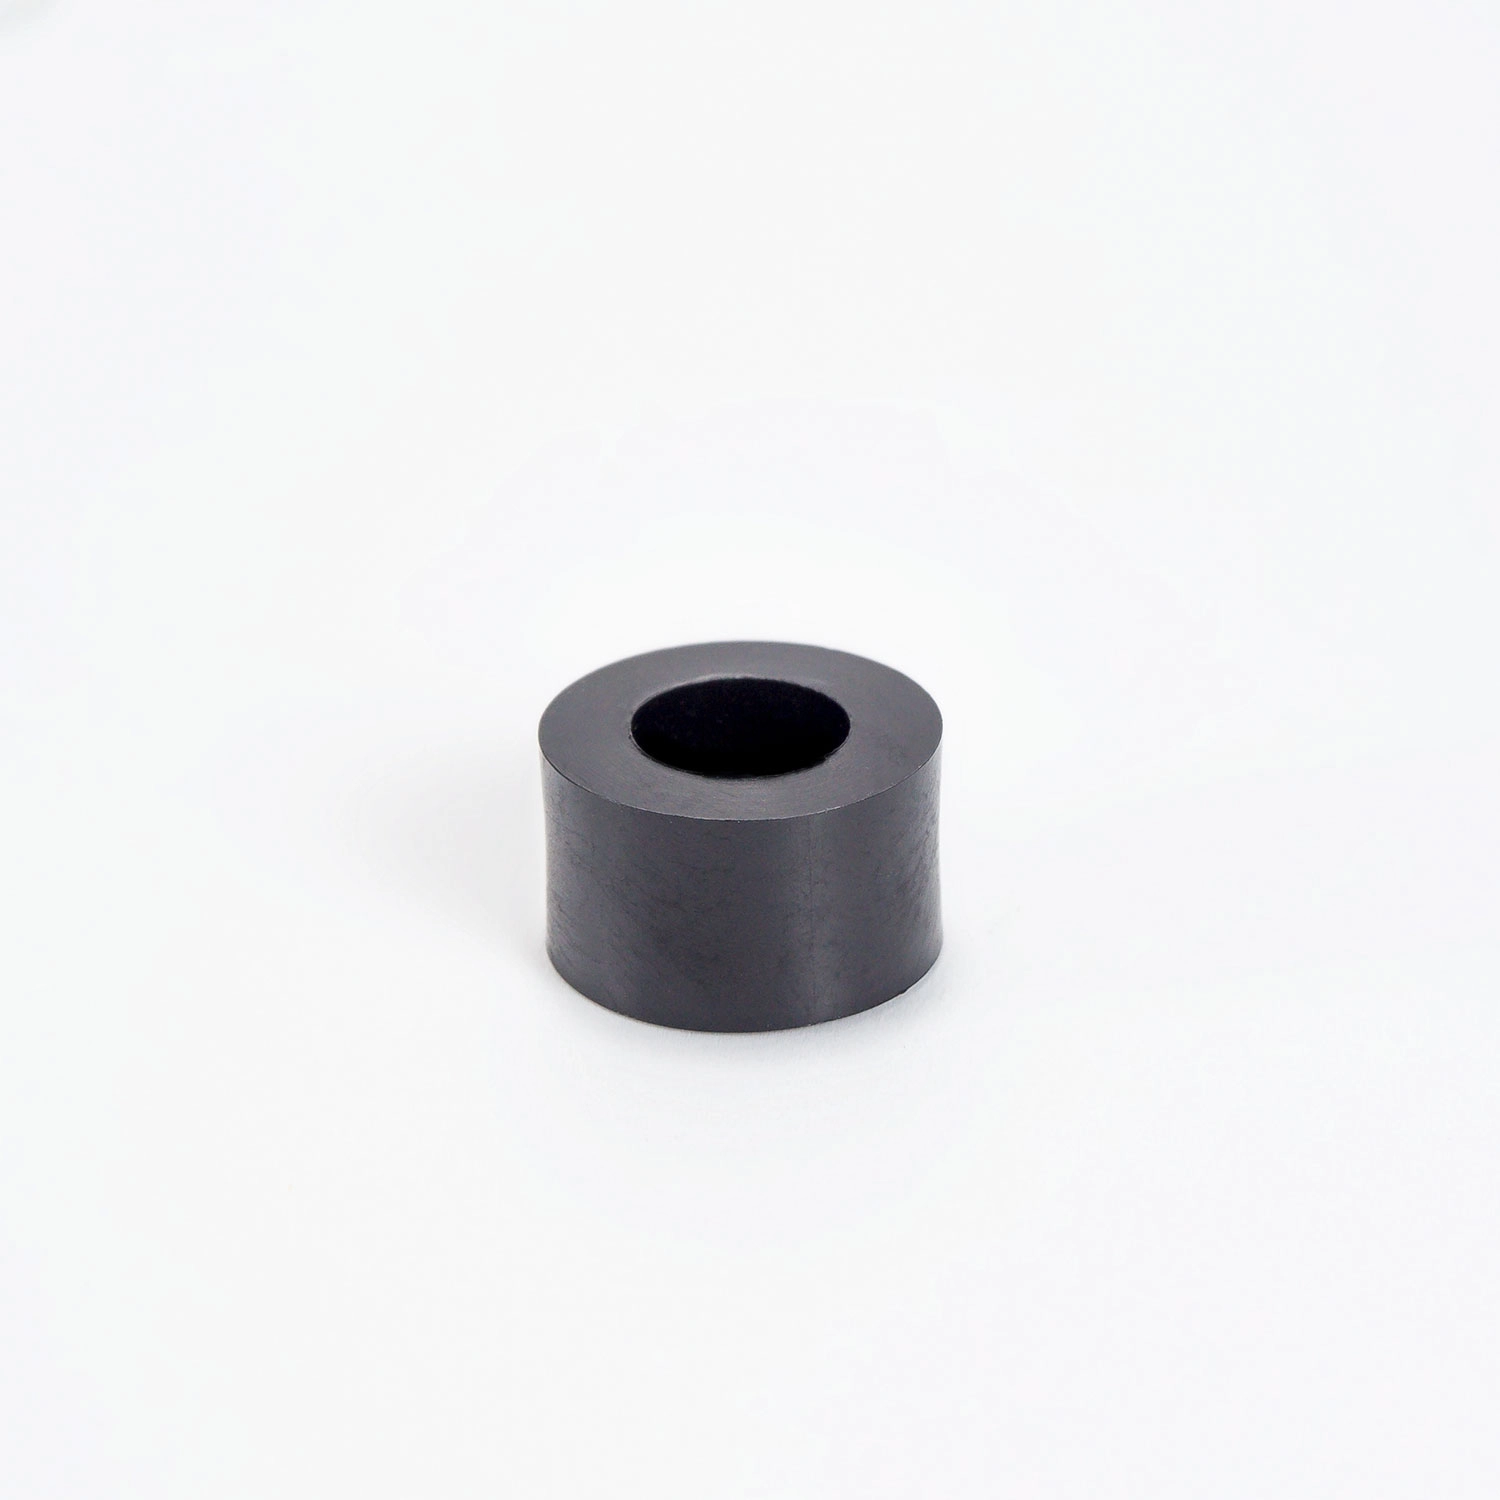 Distanzhüöse Kunststoff schwarz 7mm